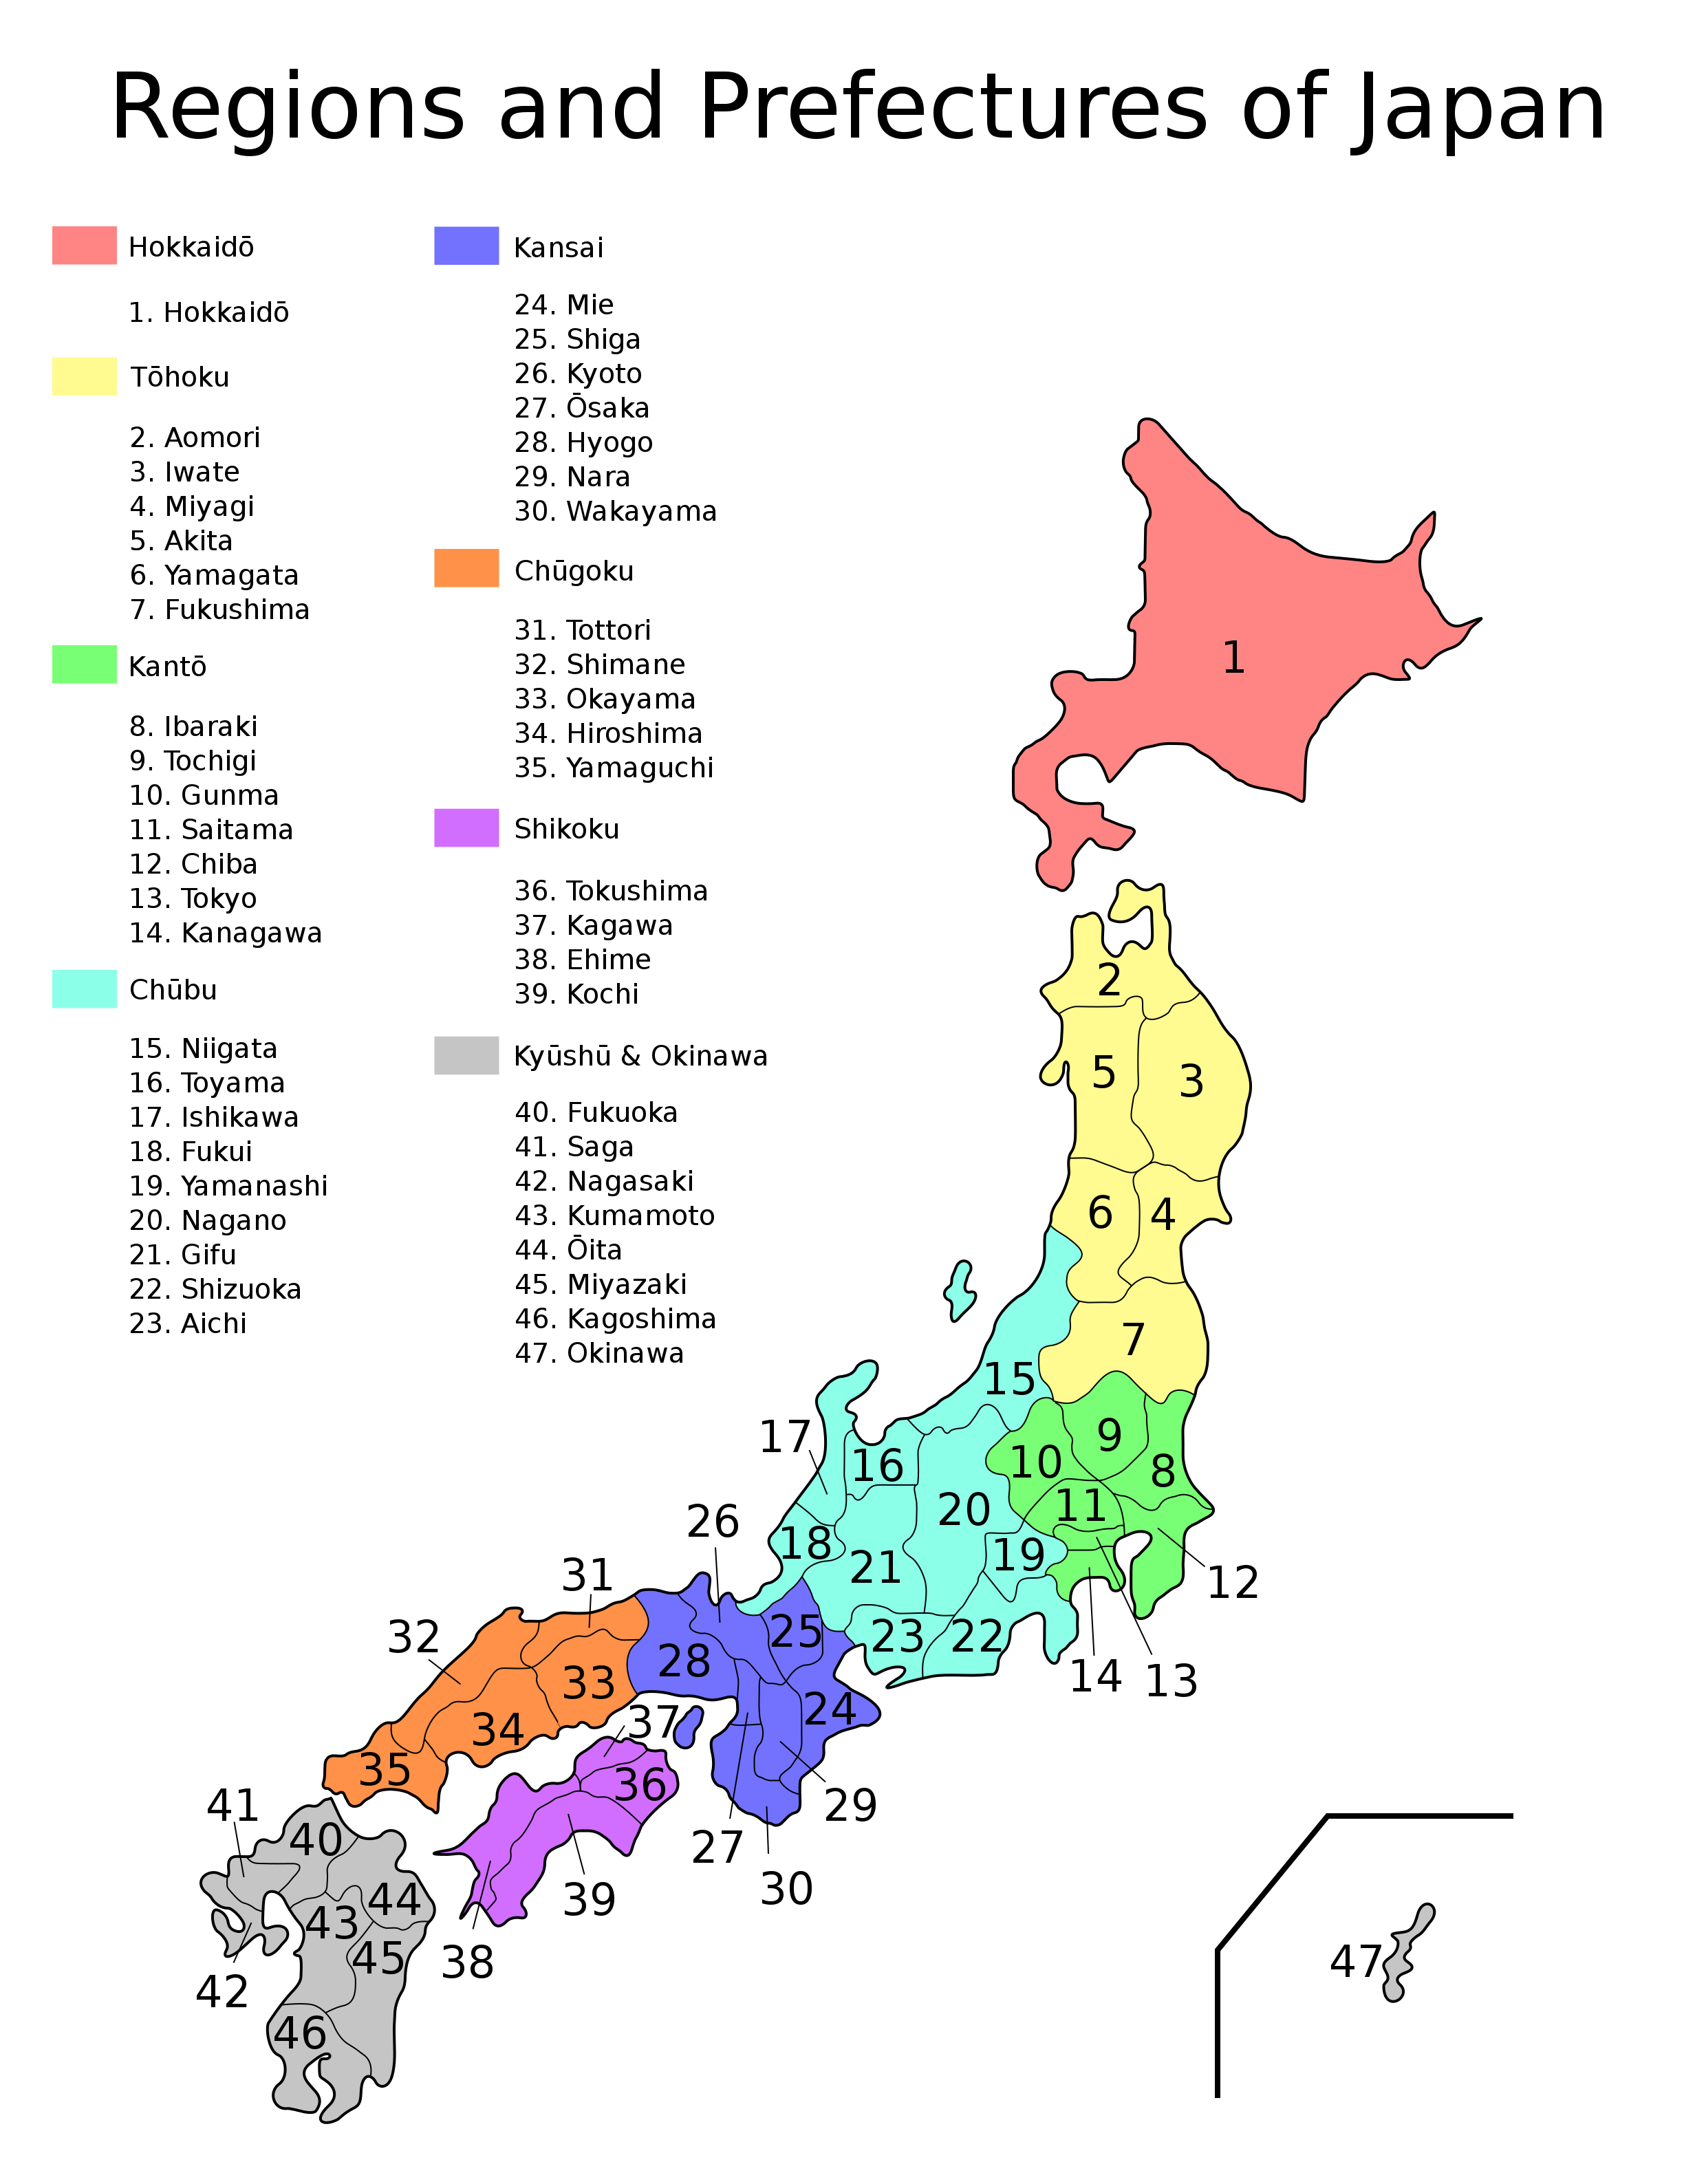 Imagens do mapa do Japão